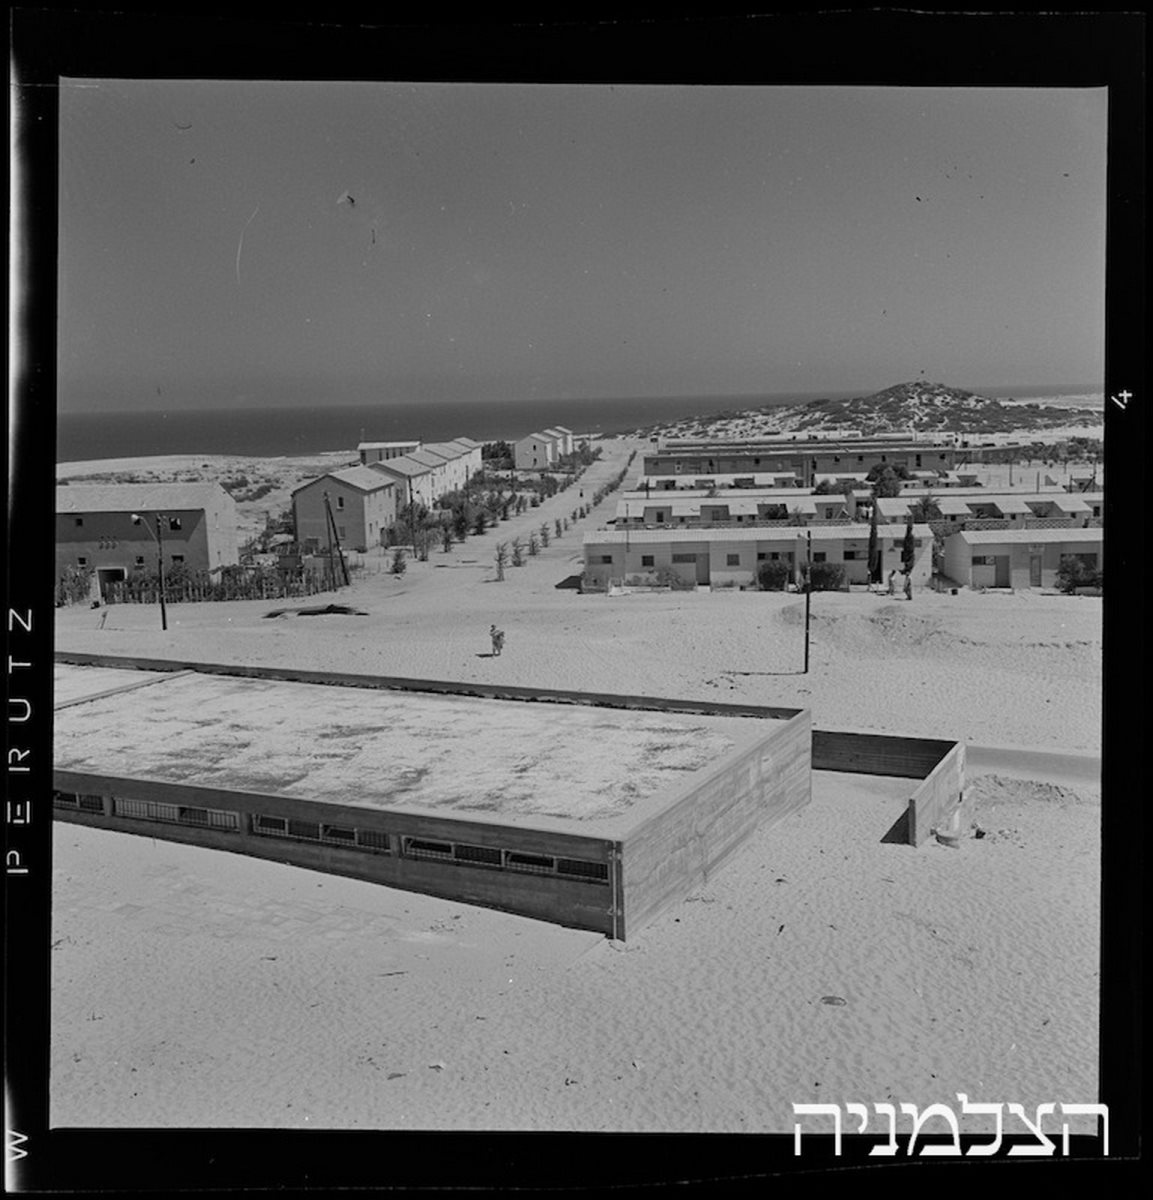 הקליפורניות ברובע א', 1960. צילום באדיבות הארכיון העירוני לתולדות אשדוד